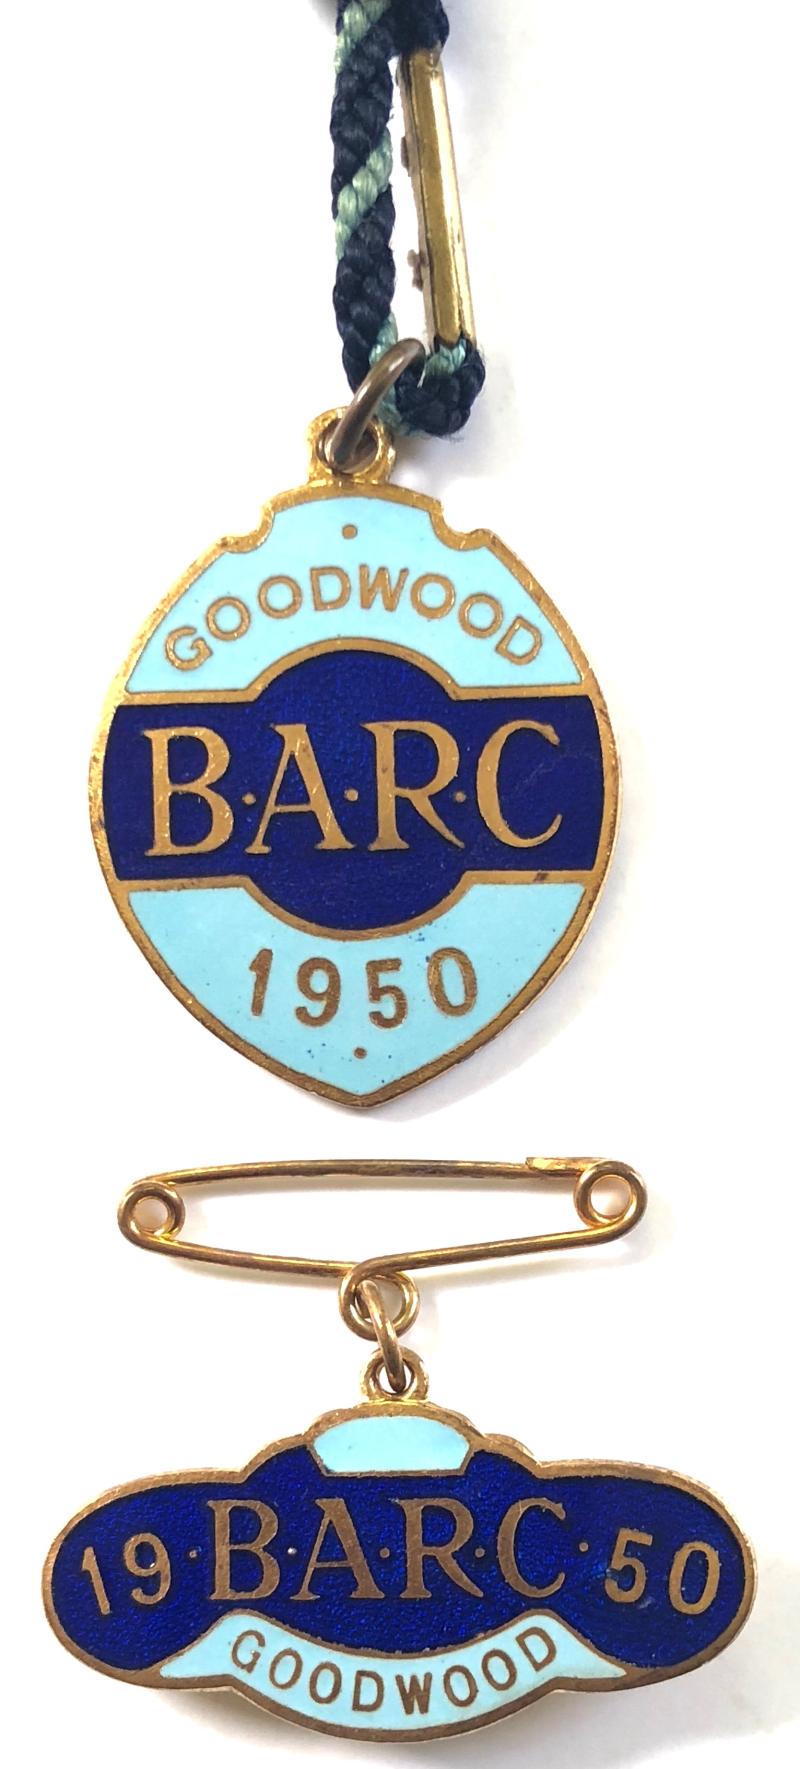 1950 Goodwood BARC membership badge & guest